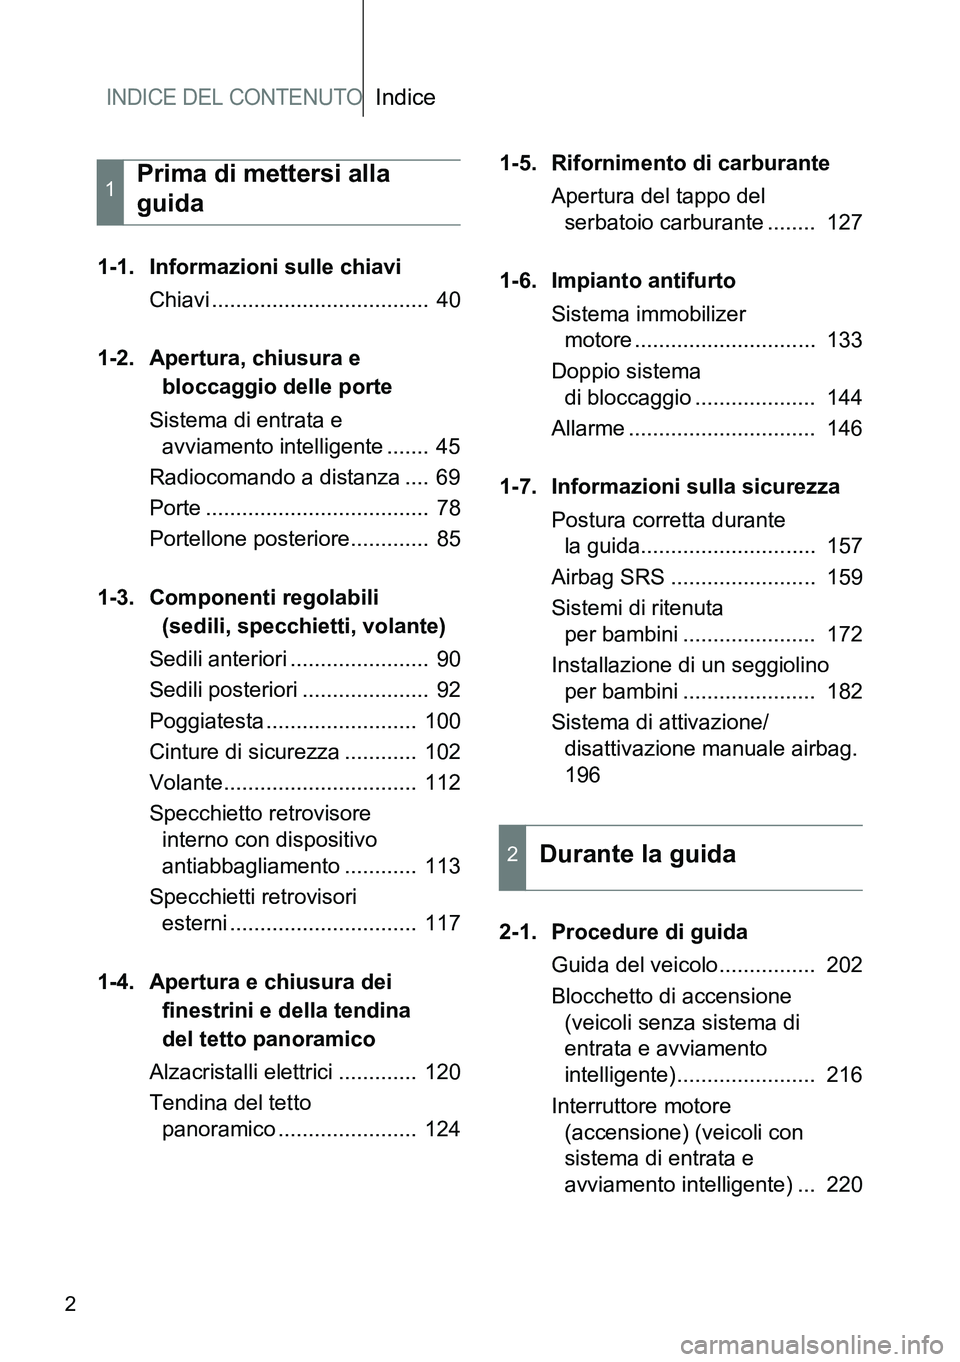 TOYOTA VERSO 2014  Manuale duso (in Italian) INDICE DEL CONTENUTOIndice
2
1-1. Informazioni sulle chiavi
Chiavi ....................................  40
1-2. Apertura, chiusura e 
bloccaggio delle porte
Sistema di entrata e 
avviamento intellige